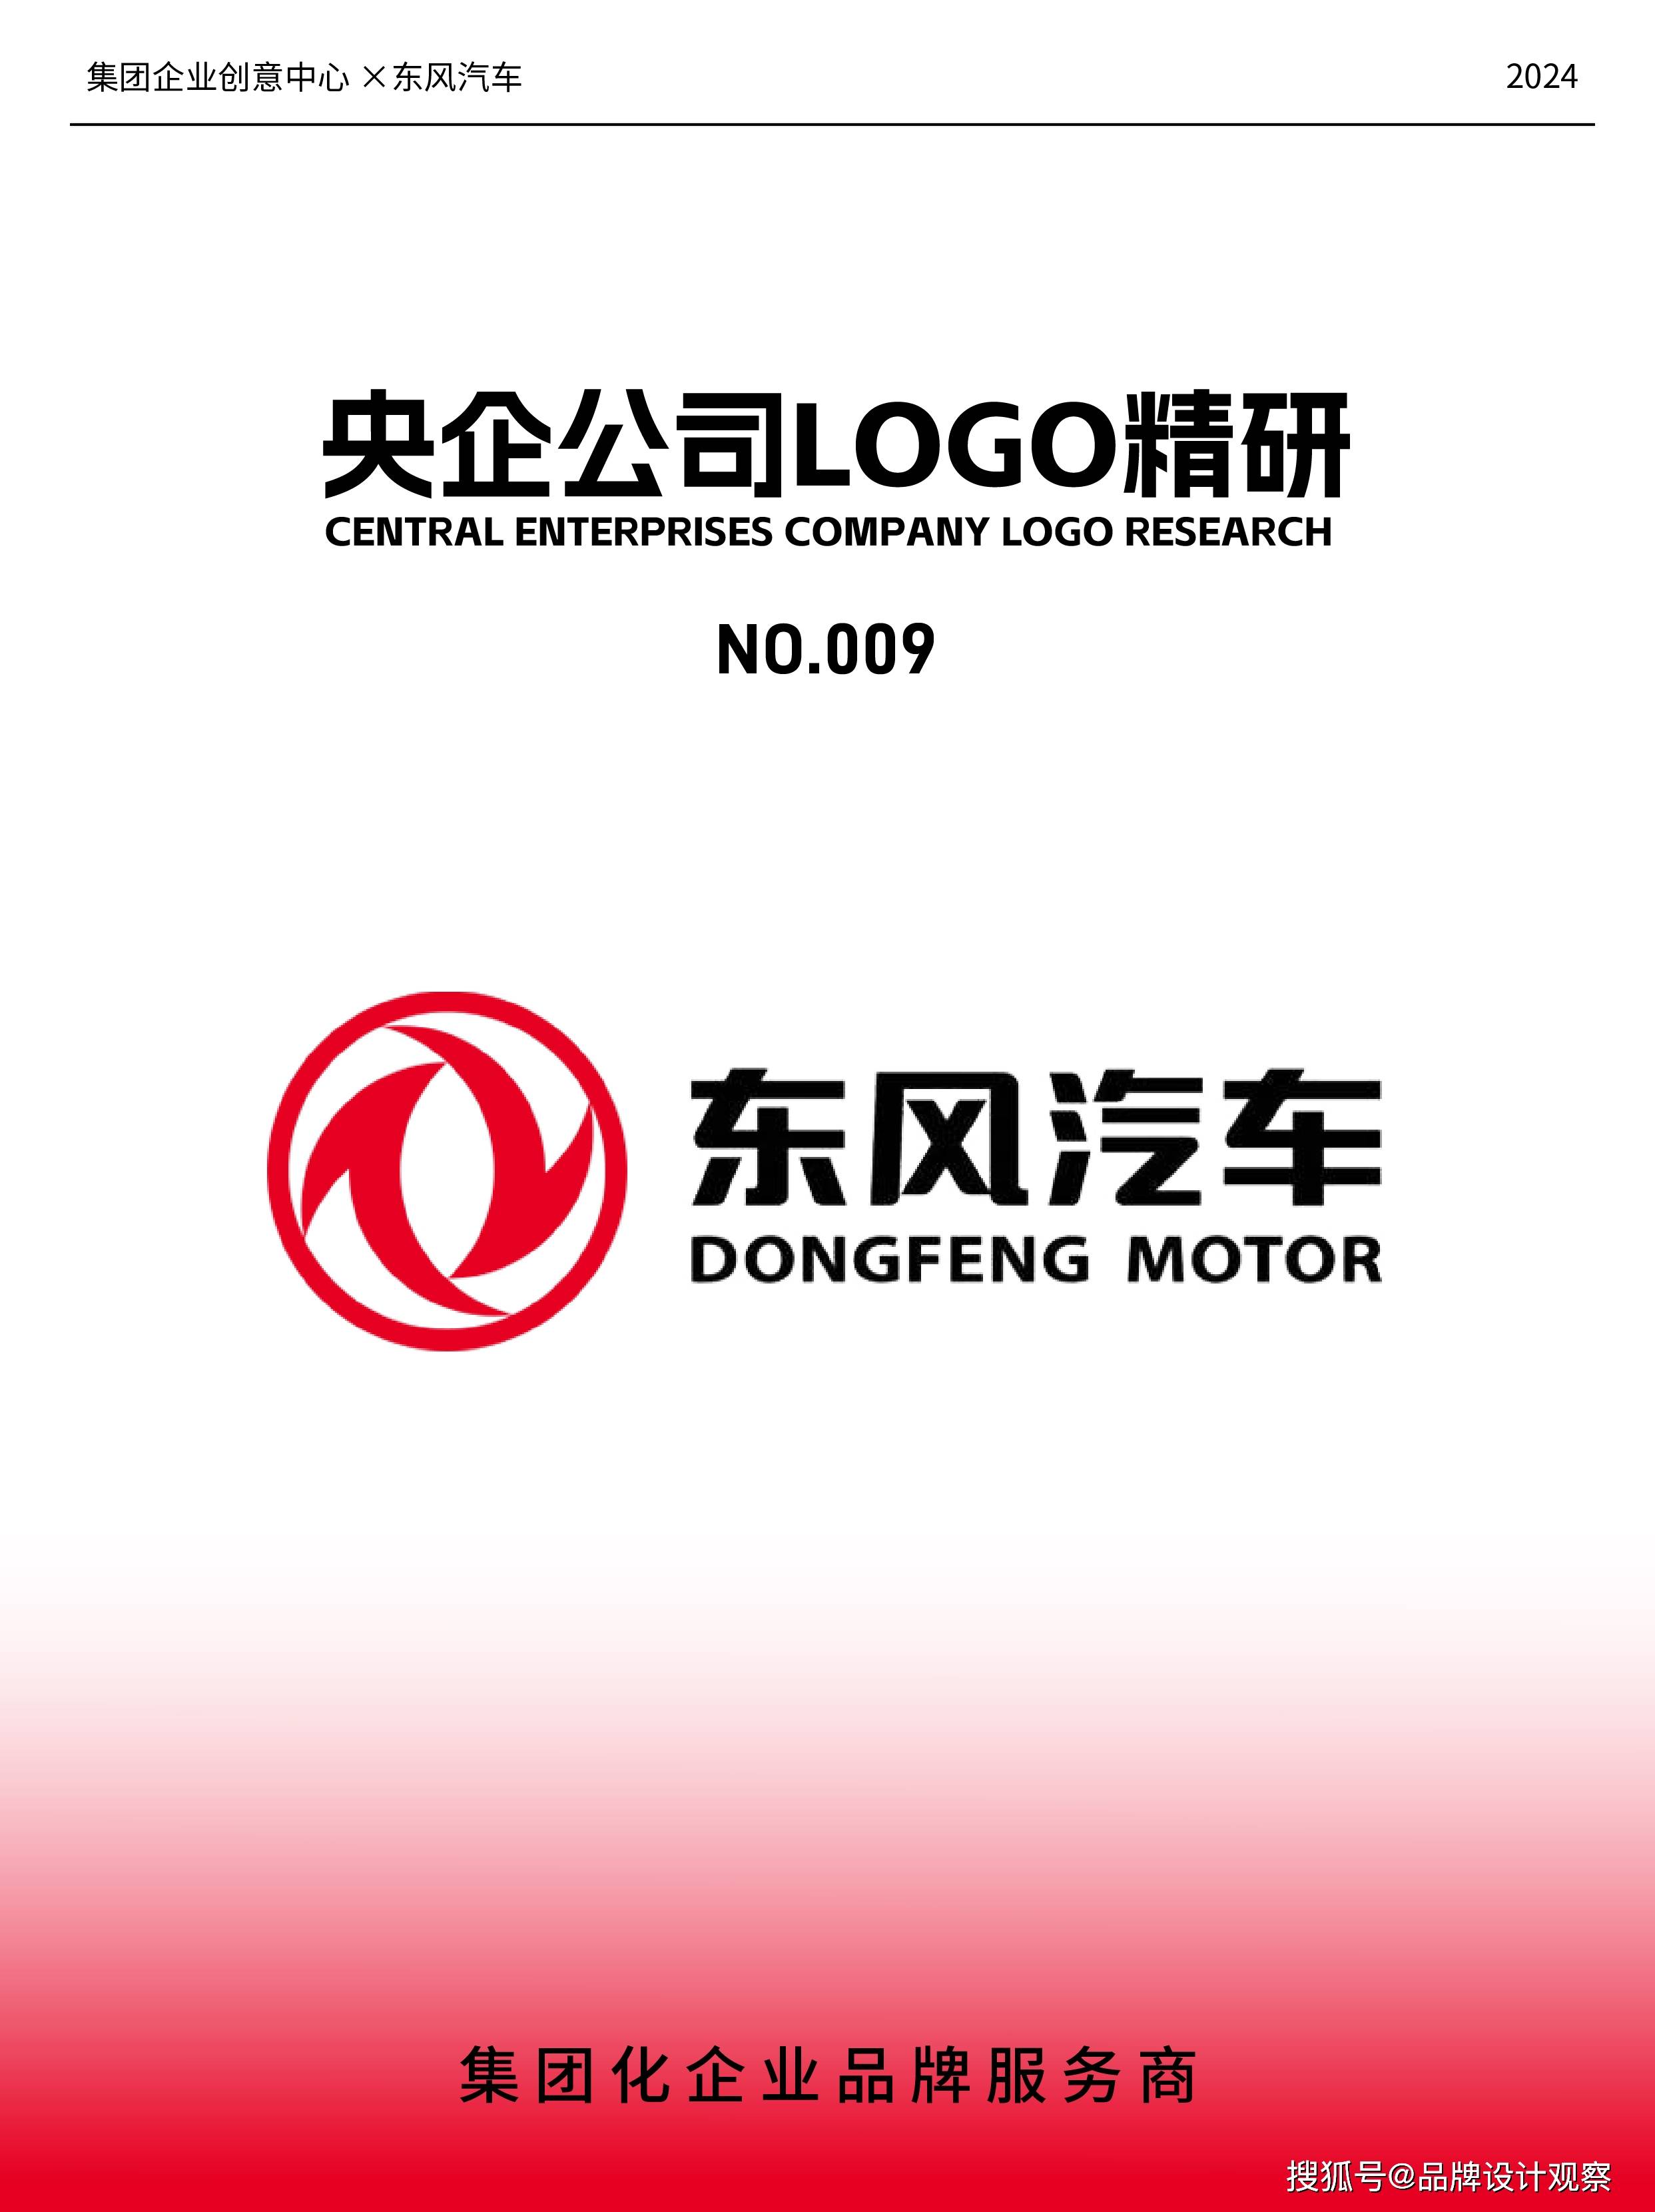 东风汽车集团公司logo设计大揭秘